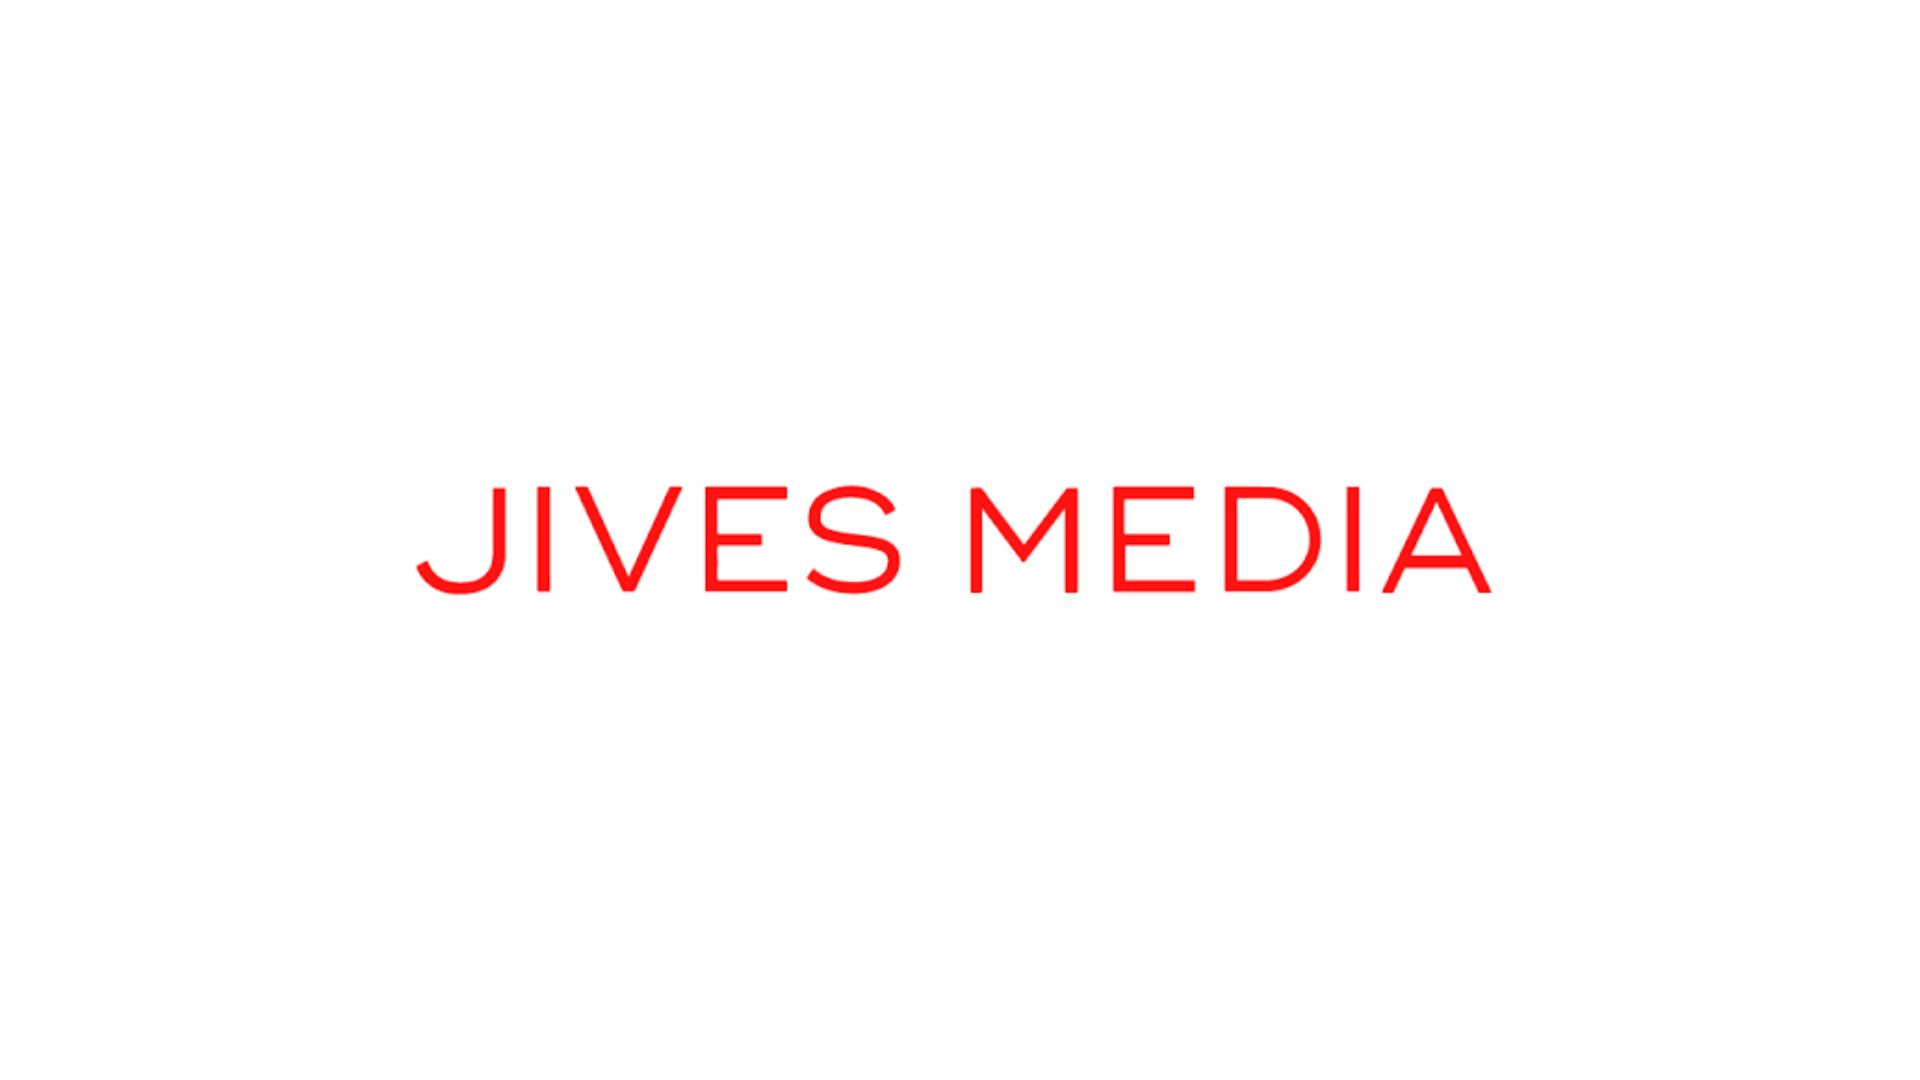 jives media logo